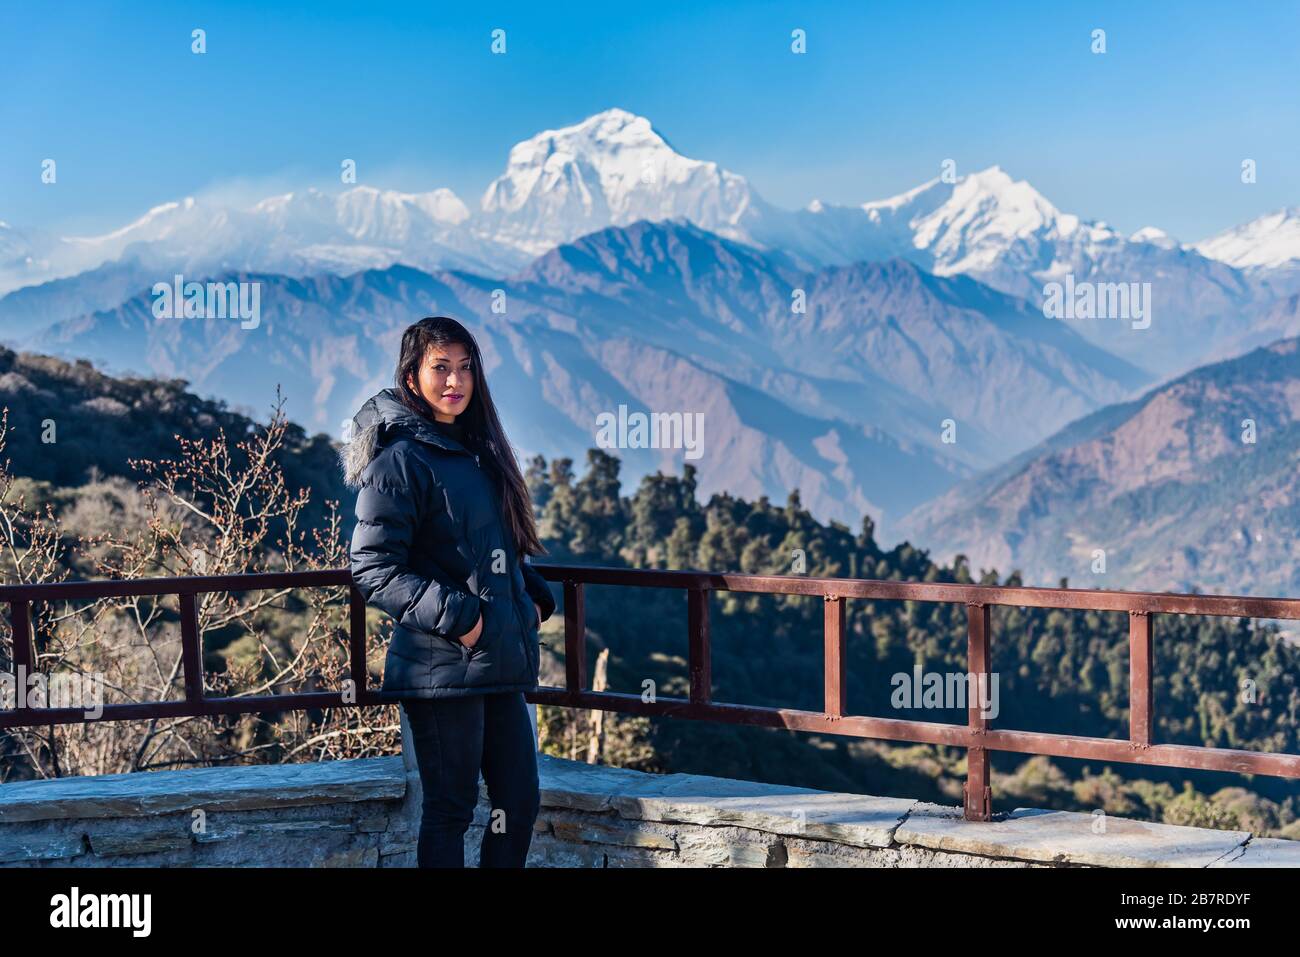 Belle fille posant devant la chaîne de montagnes Dhaulagiri, Pokhara, Népal Banque D'Images